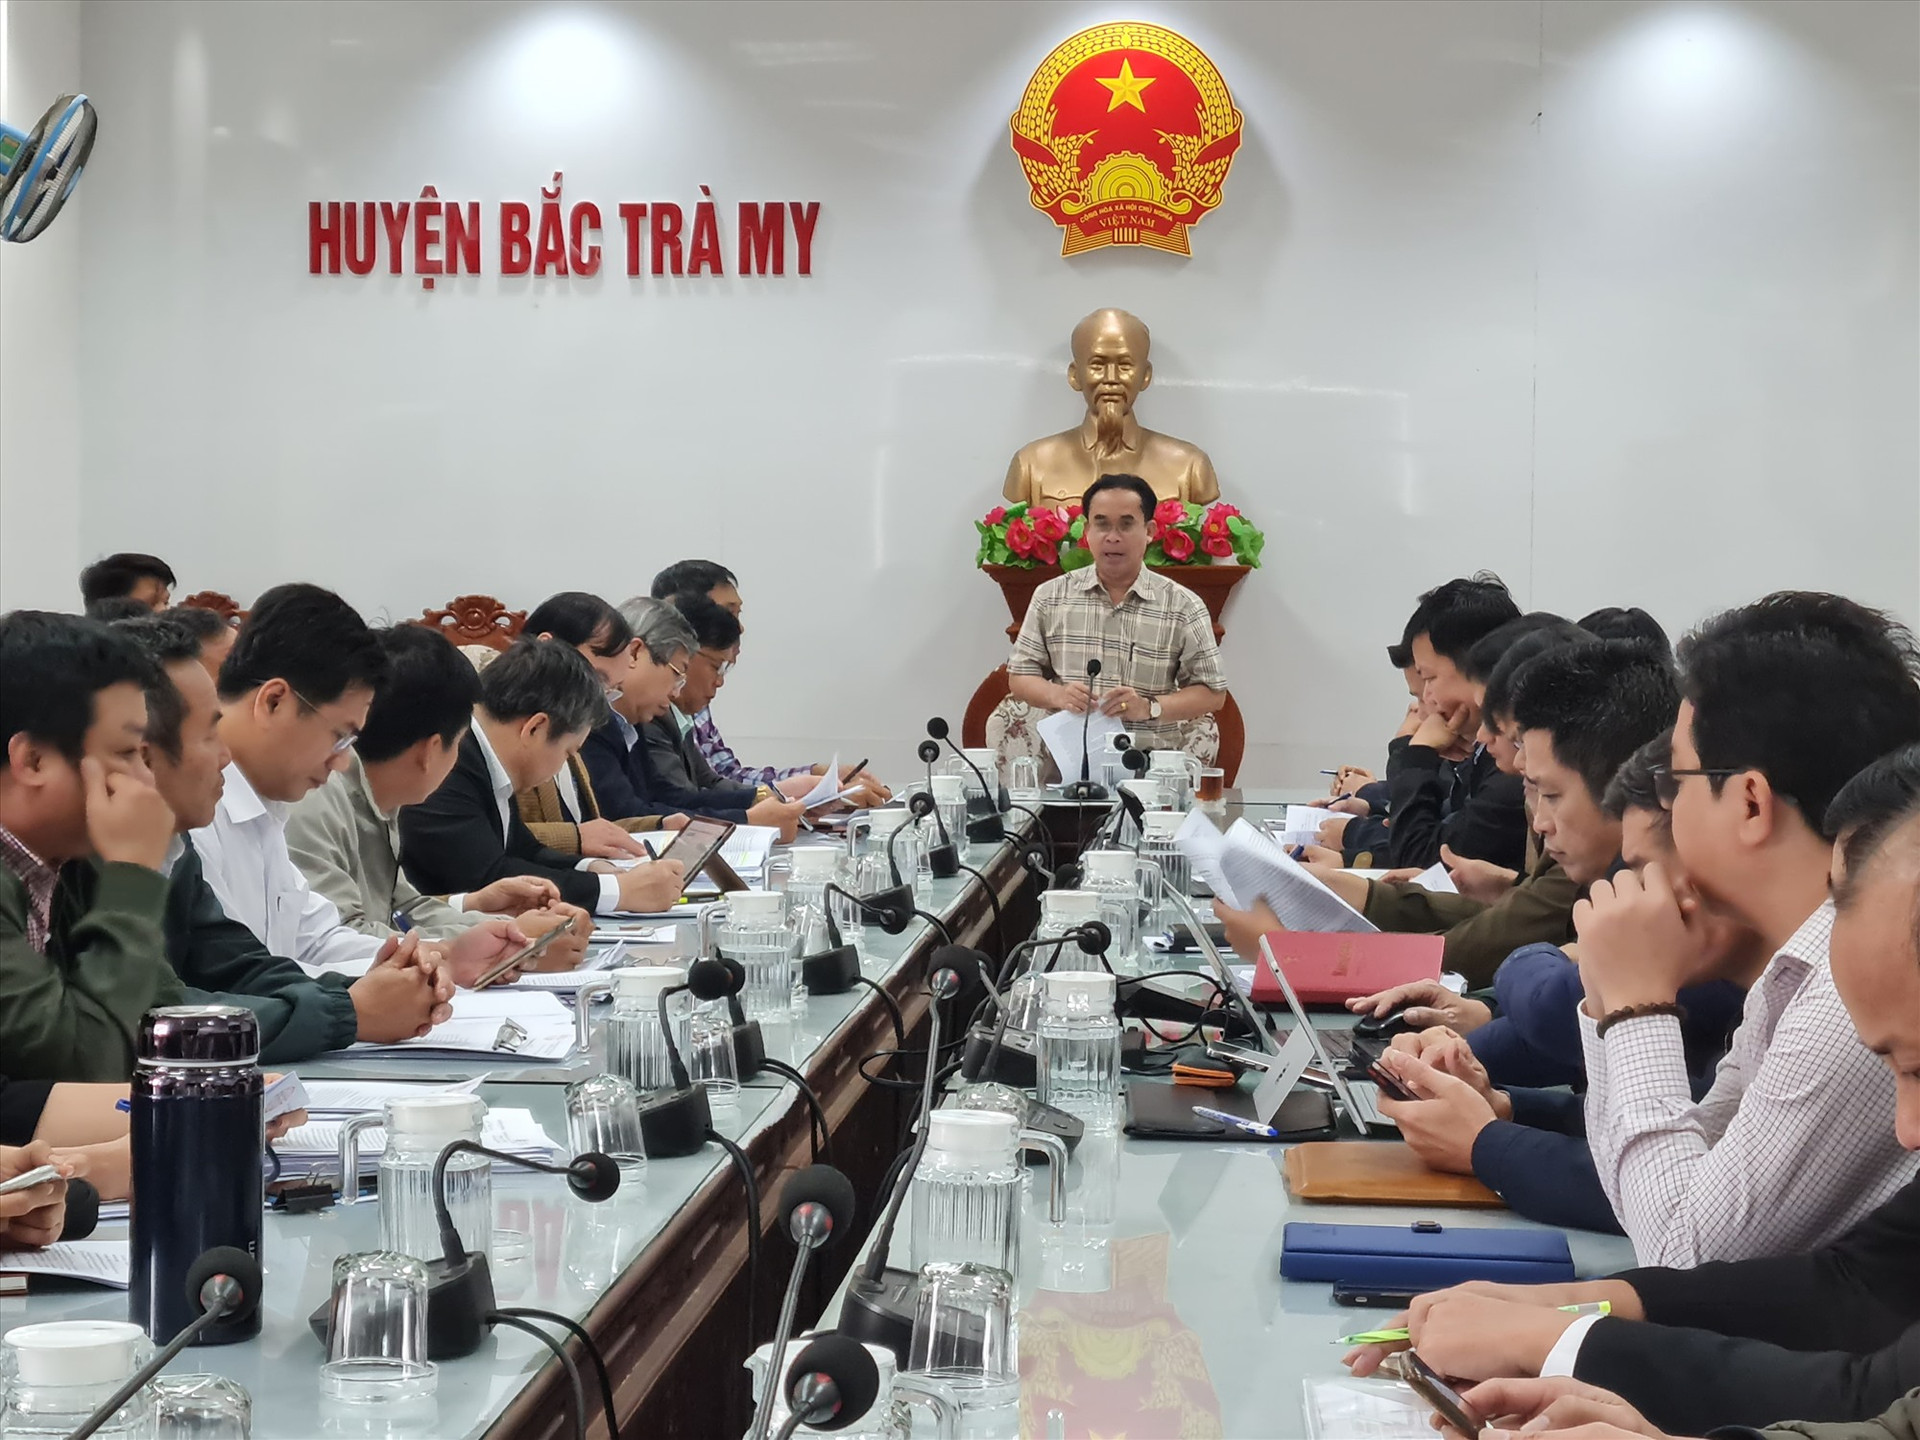 Ông Trần Anh Tuấn làm việc với huyện Bắc Trà My về tiến độ thực hiện các chương trình mục tiêu quốc gia. Ảnh: D.L